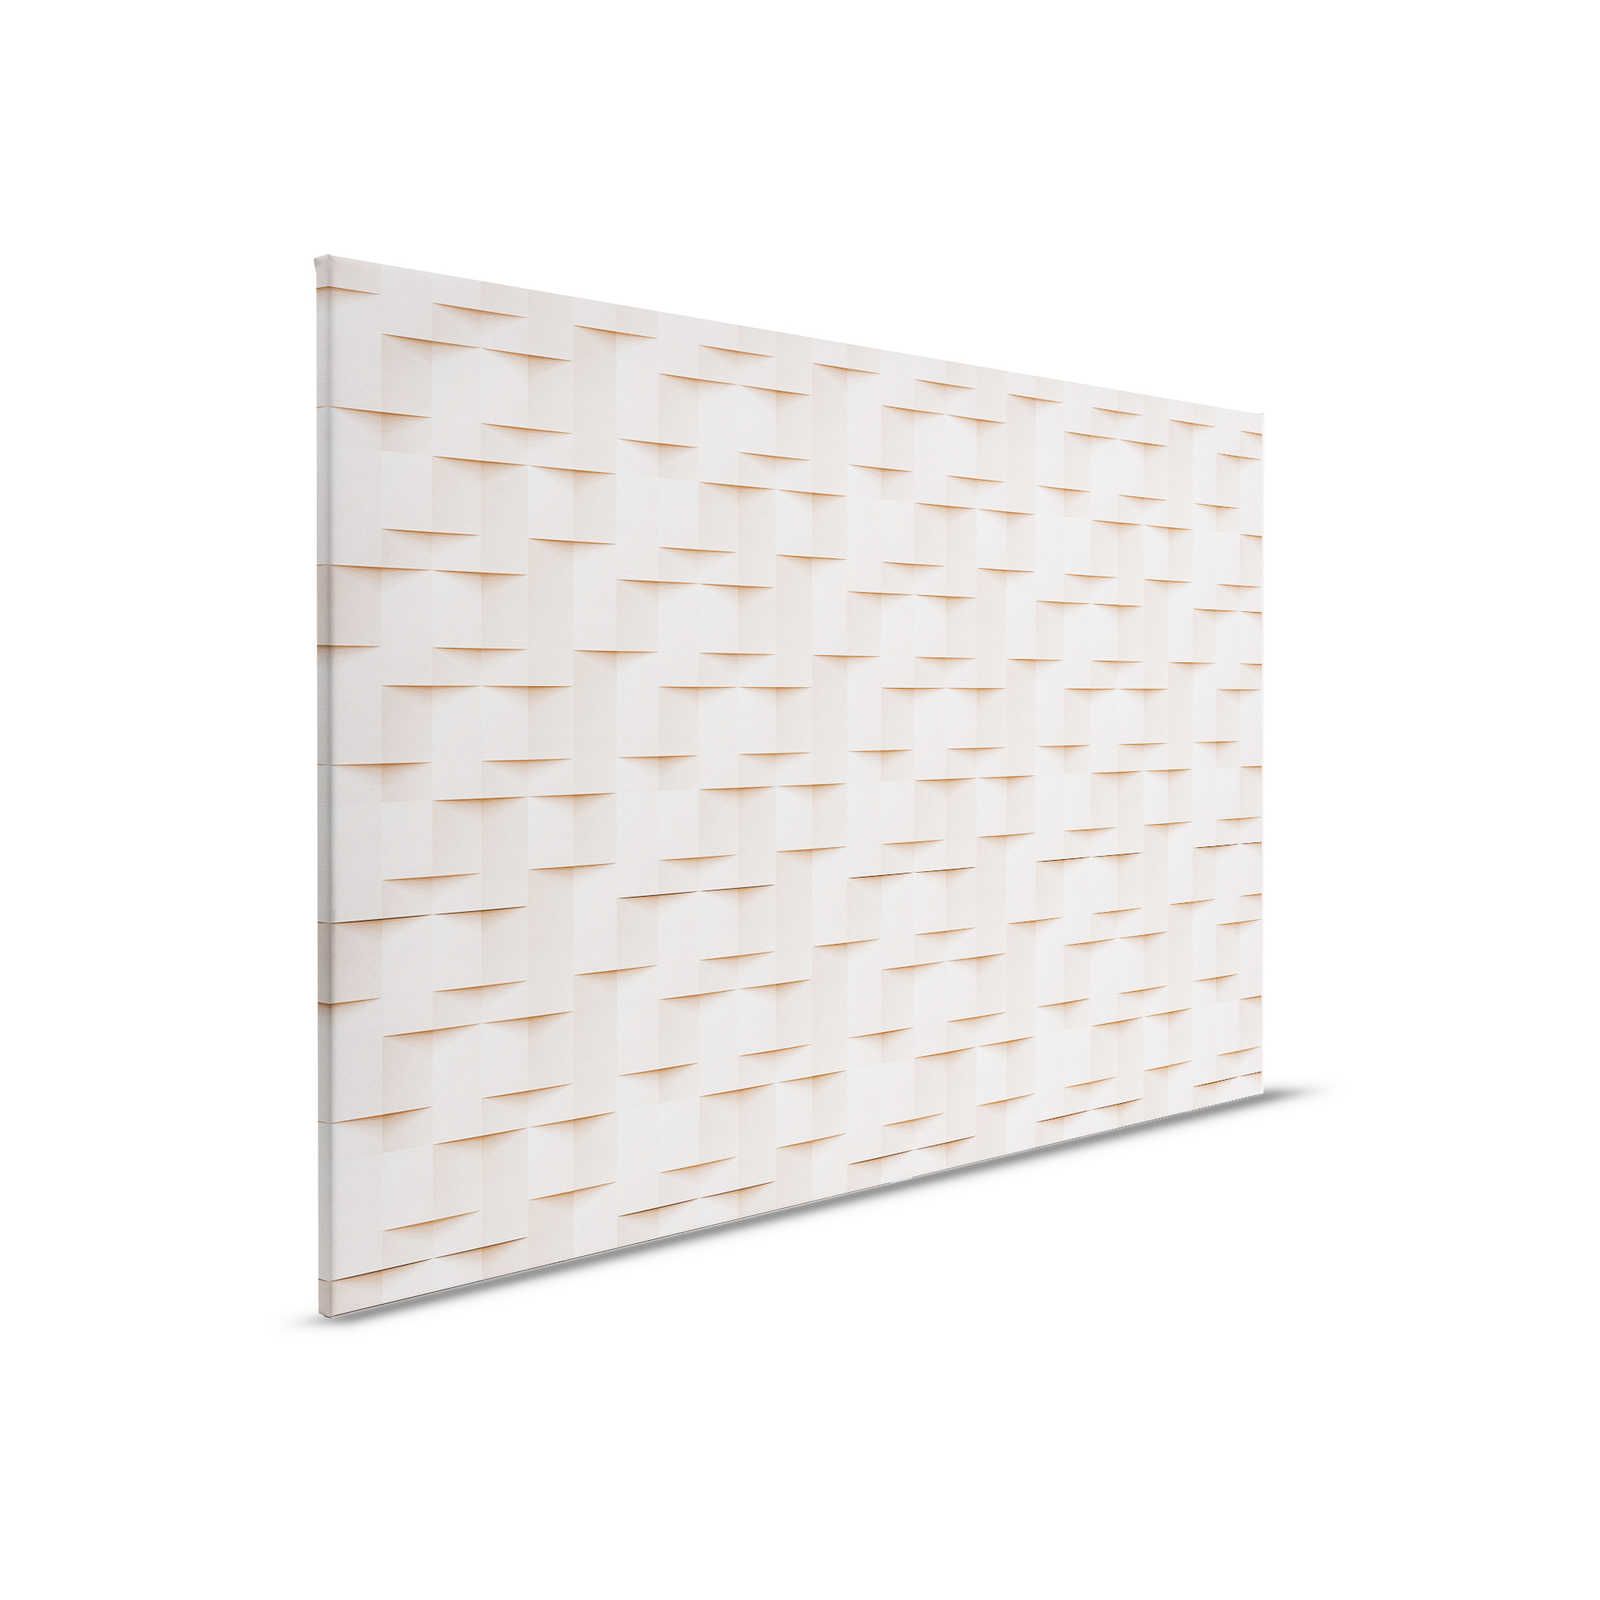 Casa de papel 1 - Lienzo pintura estructura 3D papel origami pliegues - 0,90 m x 0,60 m
